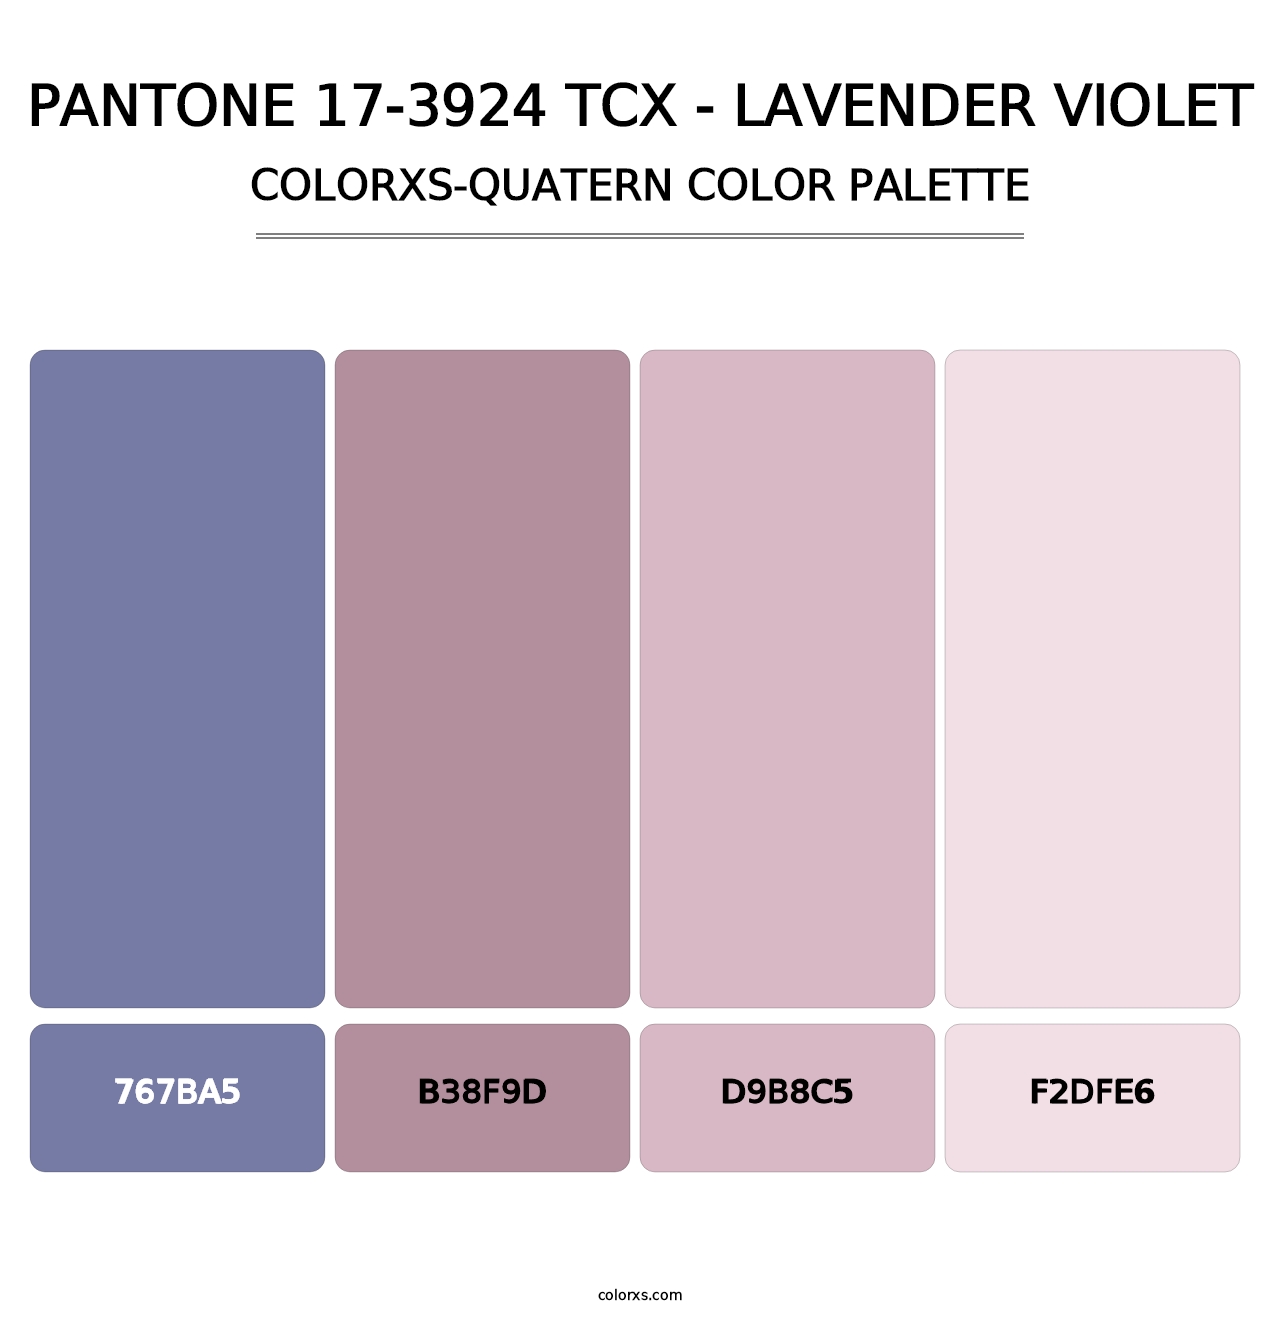 PANTONE 17-3924 TCX - Lavender Violet - Colorxs Quatern Palette